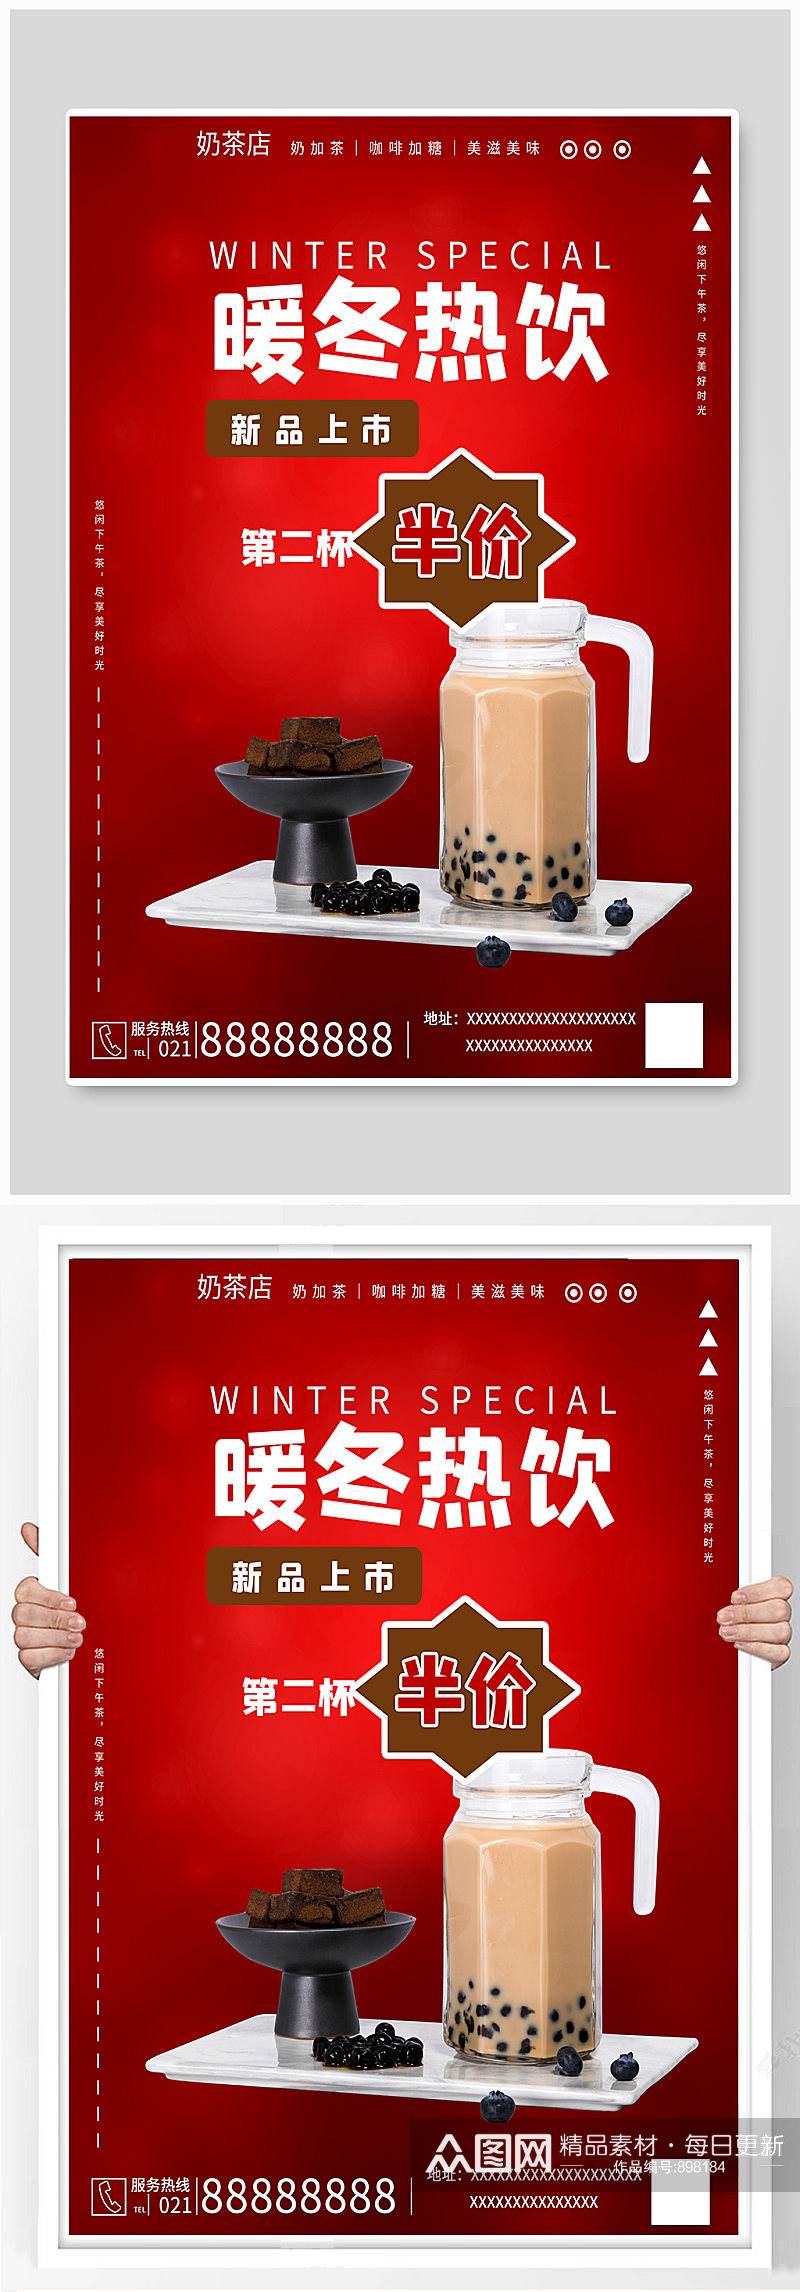 冬暖热饮奶茶咖啡红色新品上市海报素材